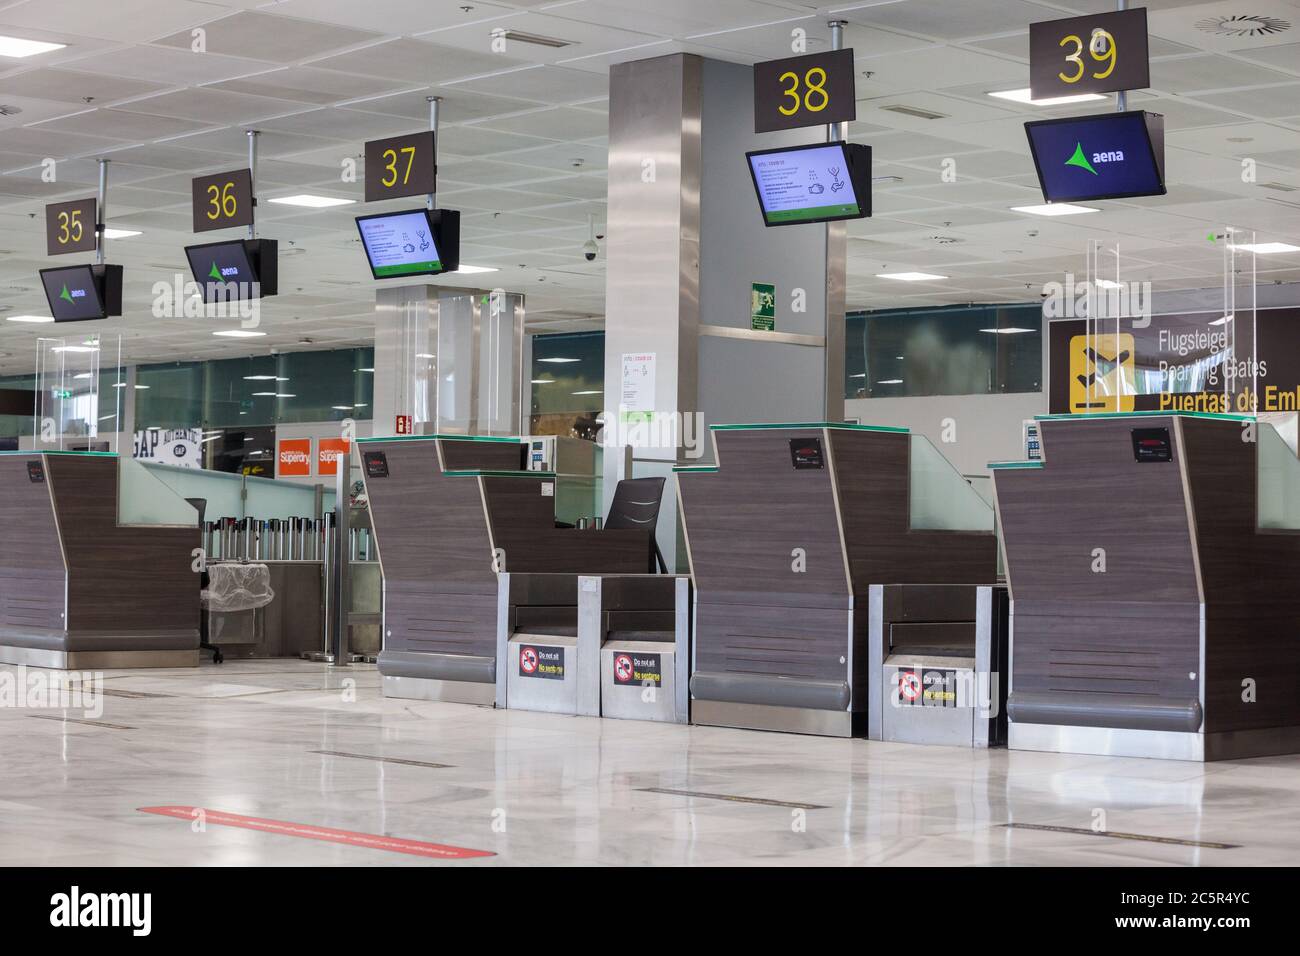 Vider les comptoirs d'enregistrement inutilisés, les ceintures de dépôt des bagages à l'aéroport de Tenerife Sud, la zone des départs, en raison des restrictions de voyage liées à l'épidémie de coronavirus Covid-19. Banque D'Images